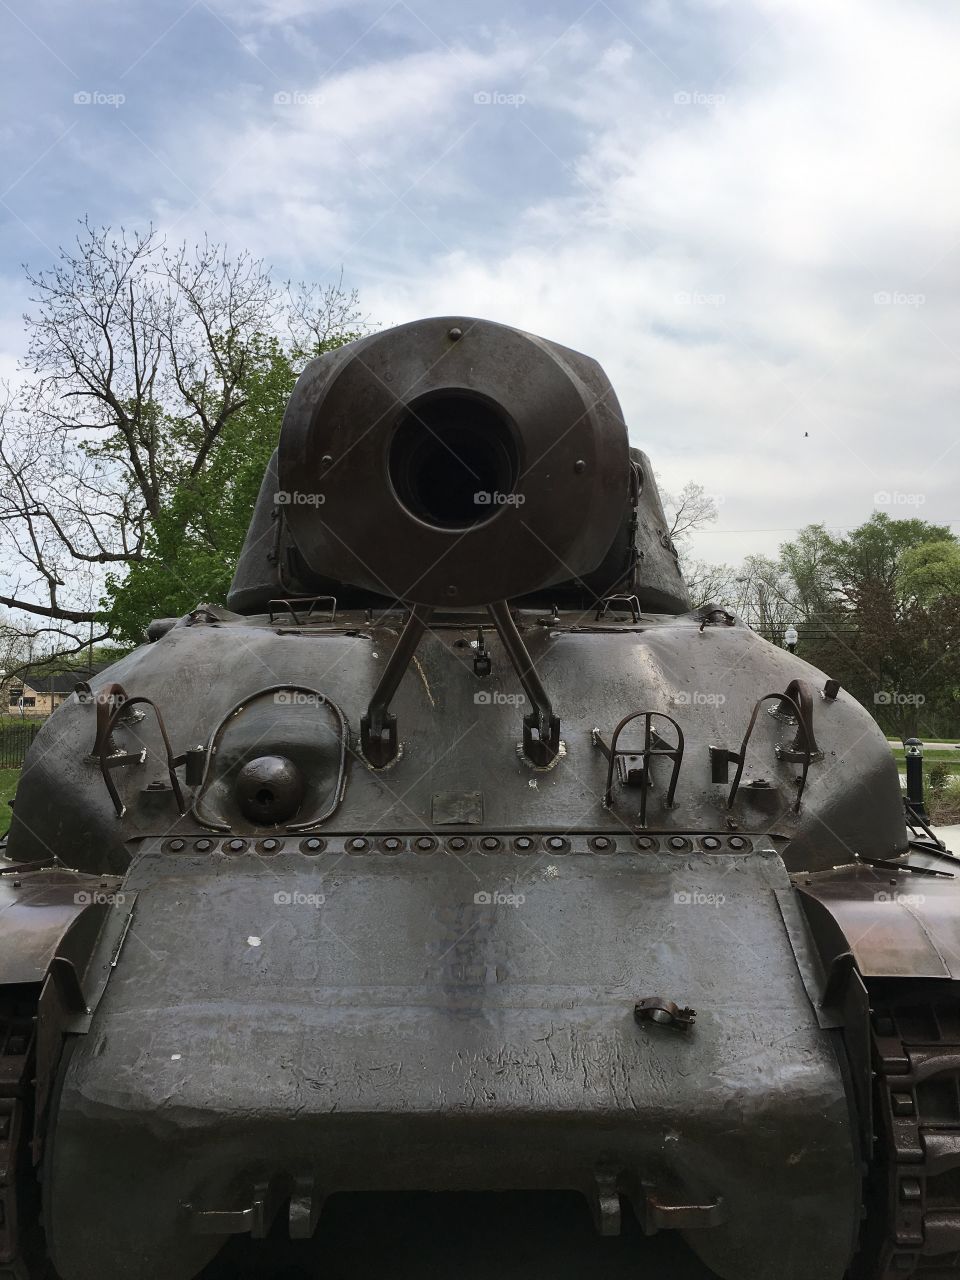 Tank at the park up close